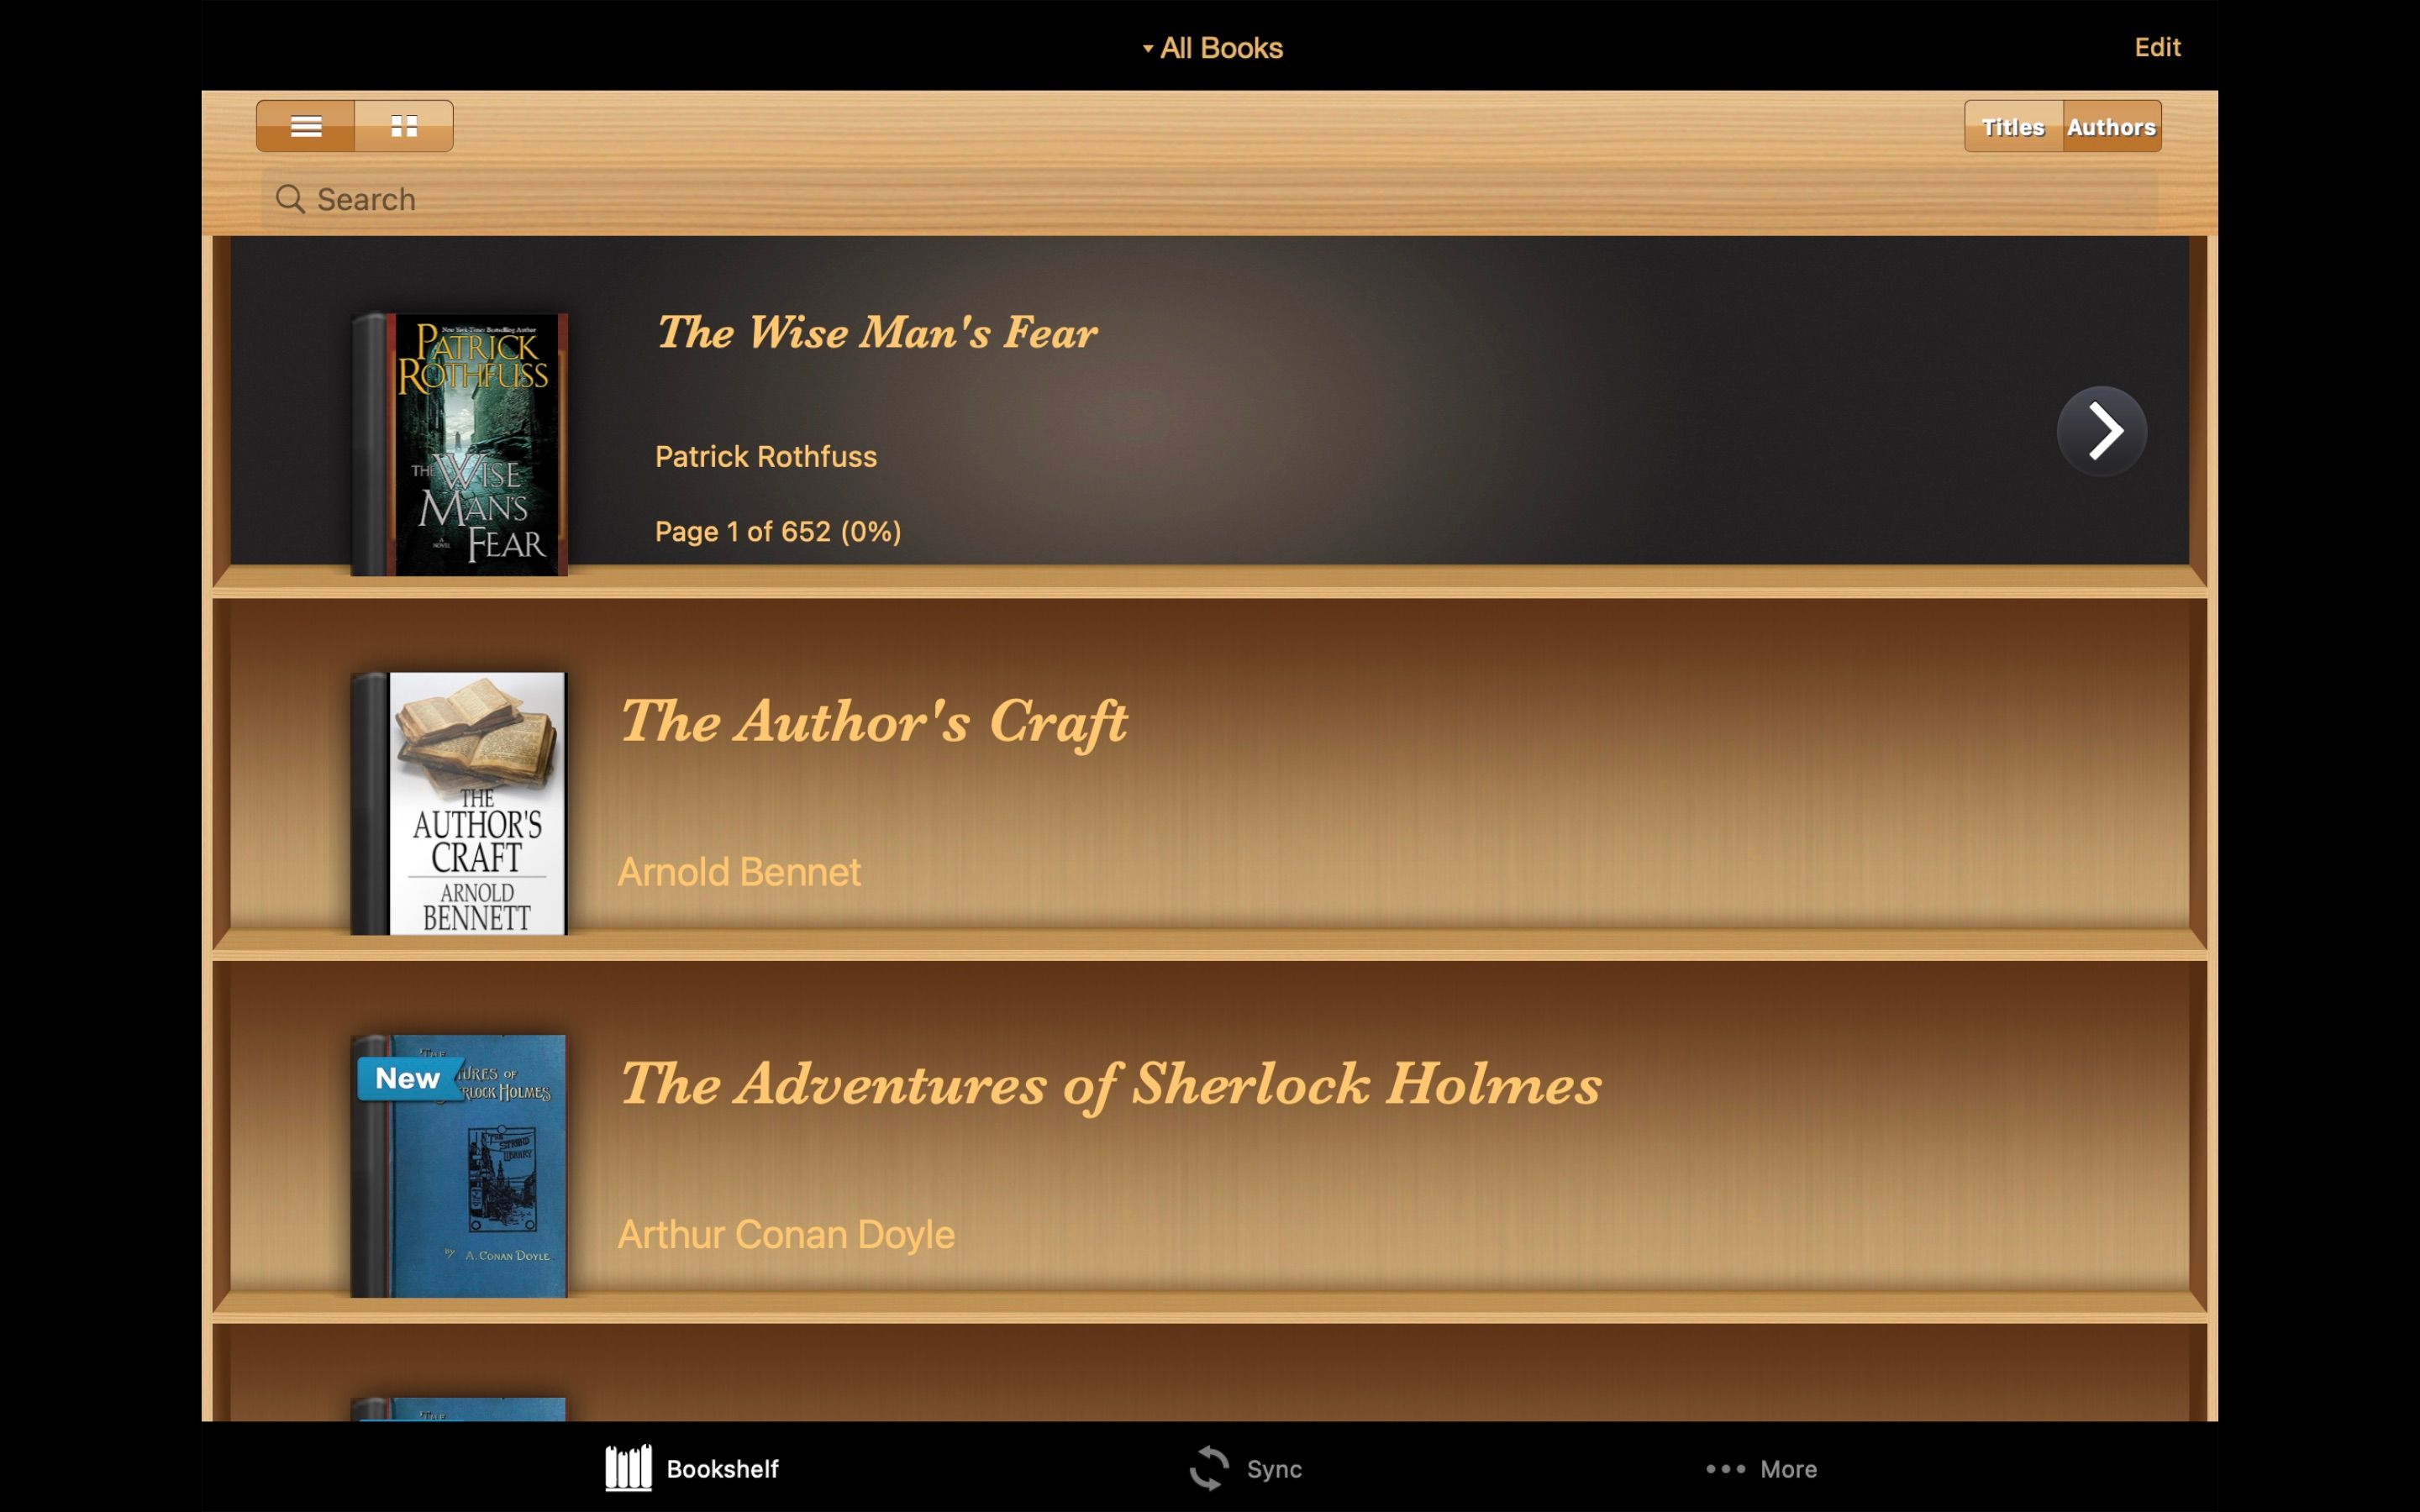 Скриншот домашней книжной полки Ebook Reader с тремя выставленными книгами